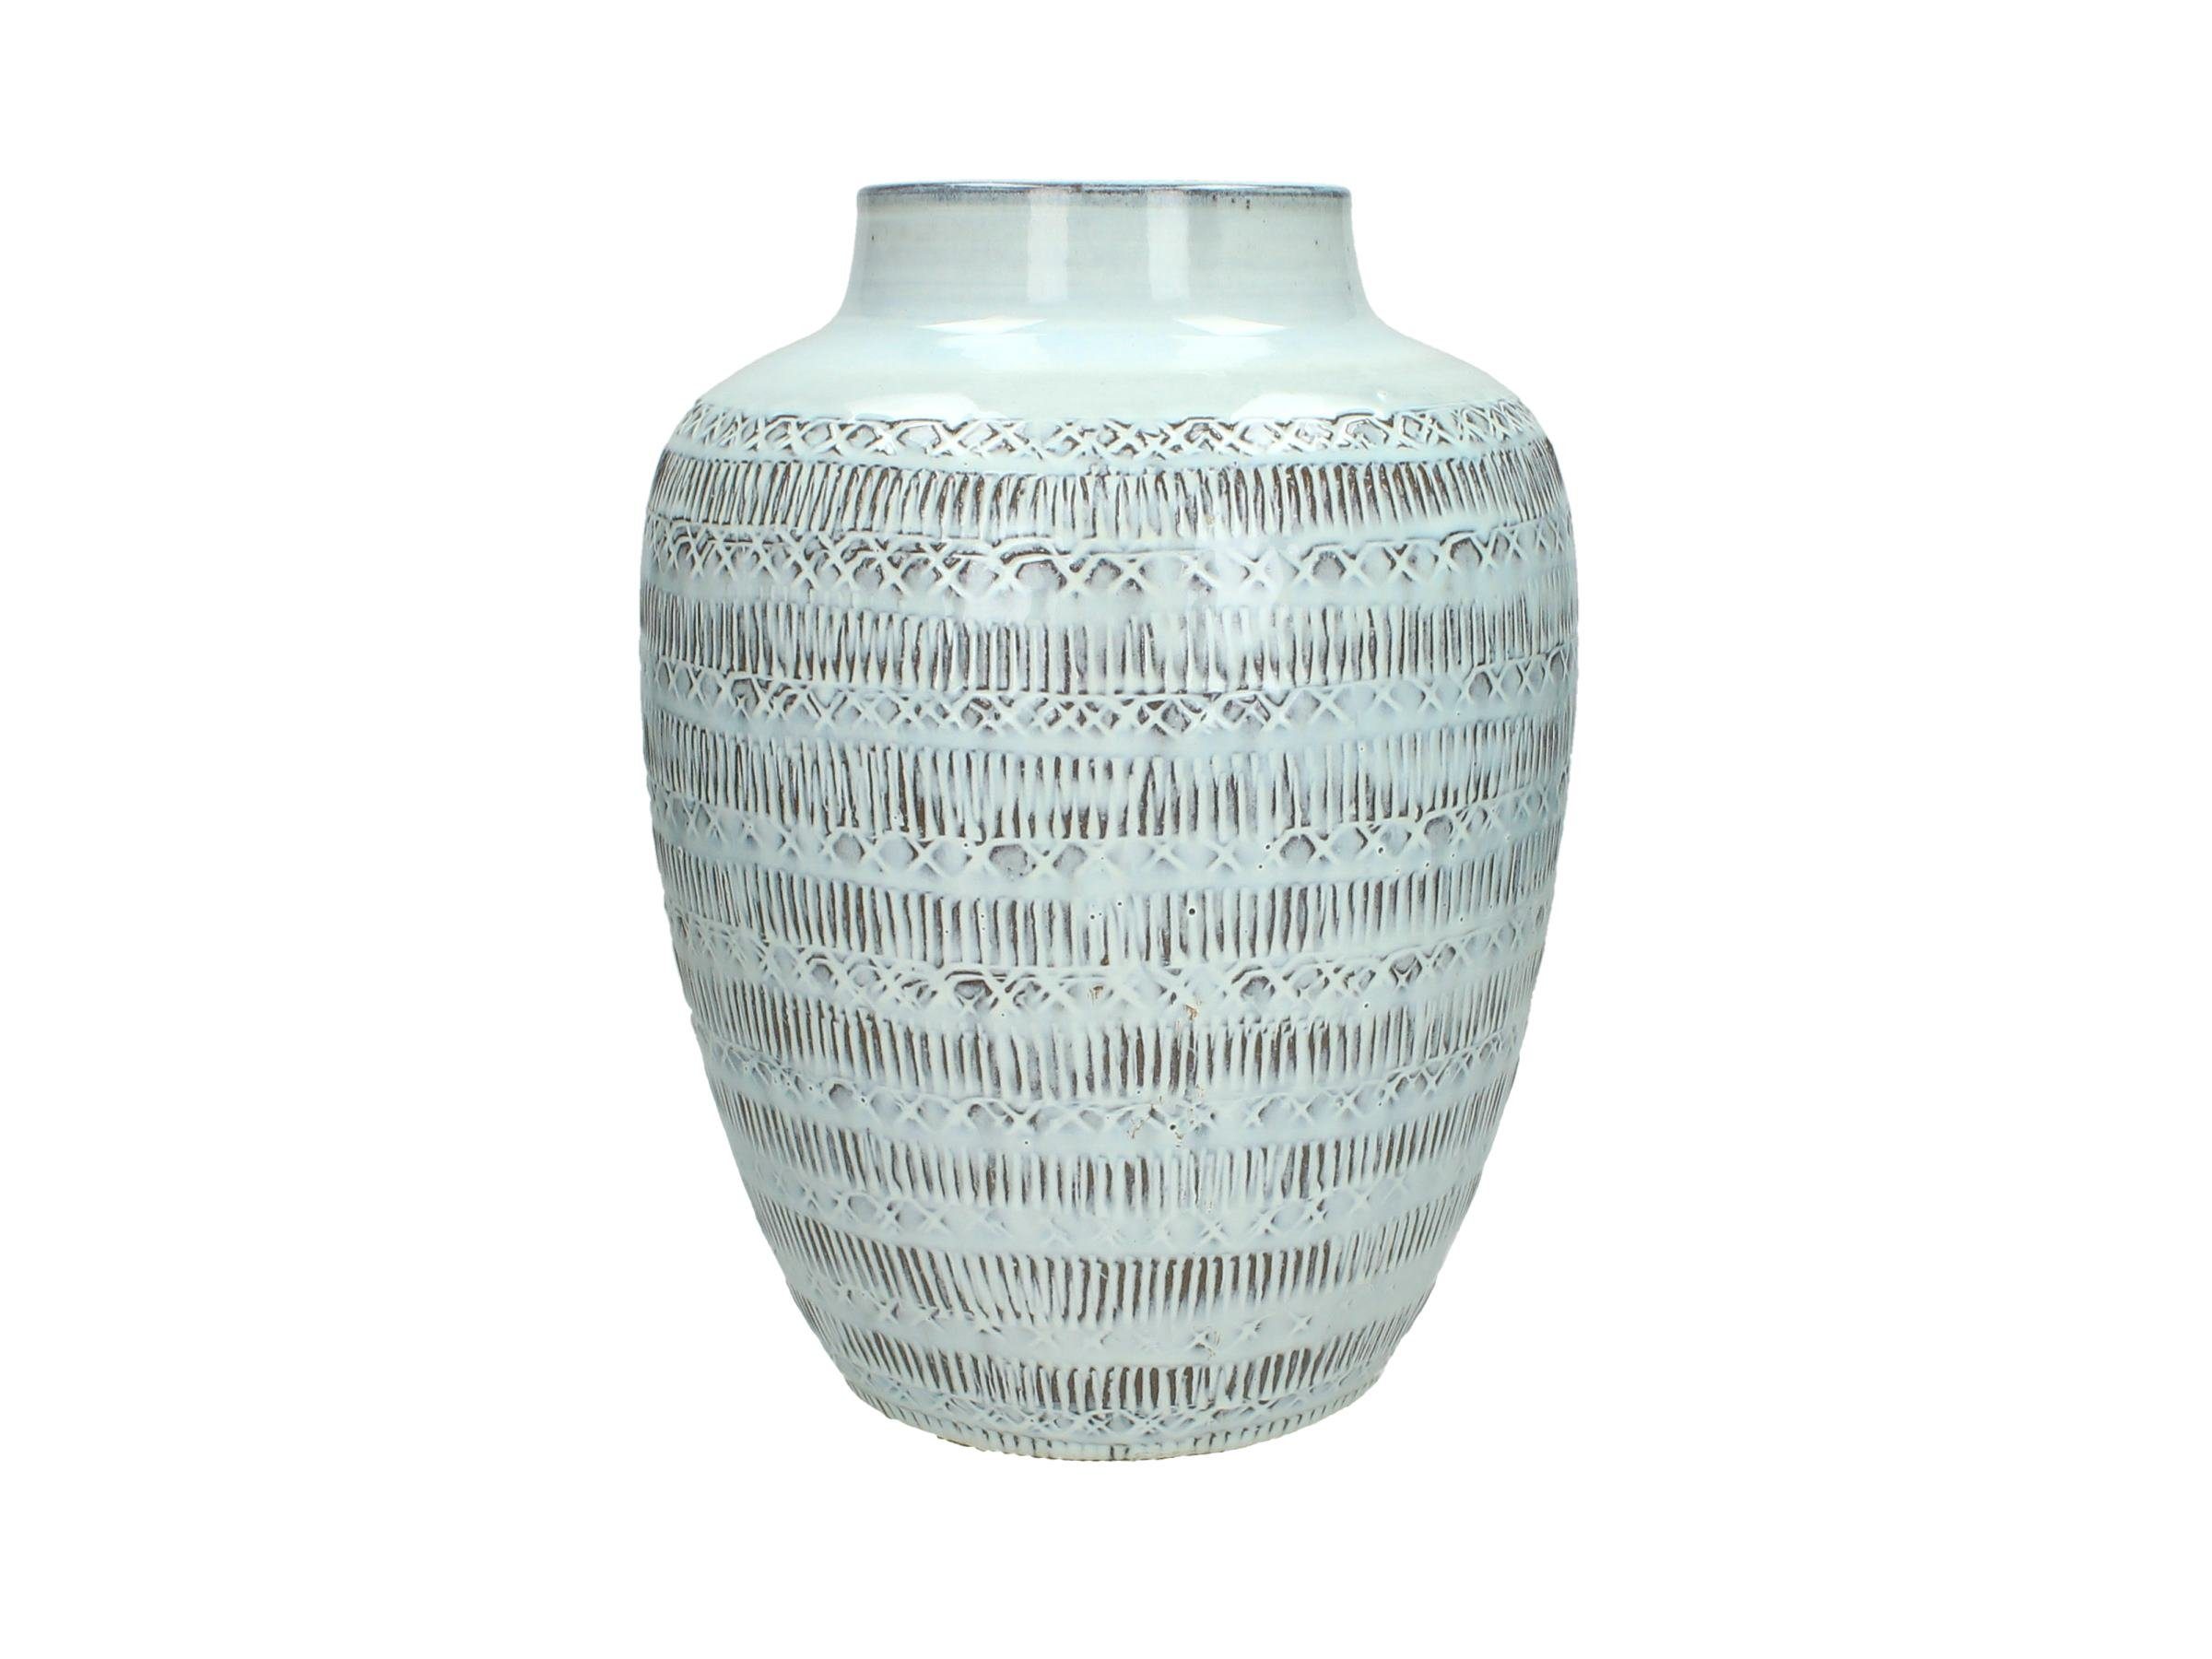 HD Collection Dekovase Handgefertigte Boho Terrakotta Vase mit Ethno Muster, weiß, Dekovase, Dekoration, Tischdekoration